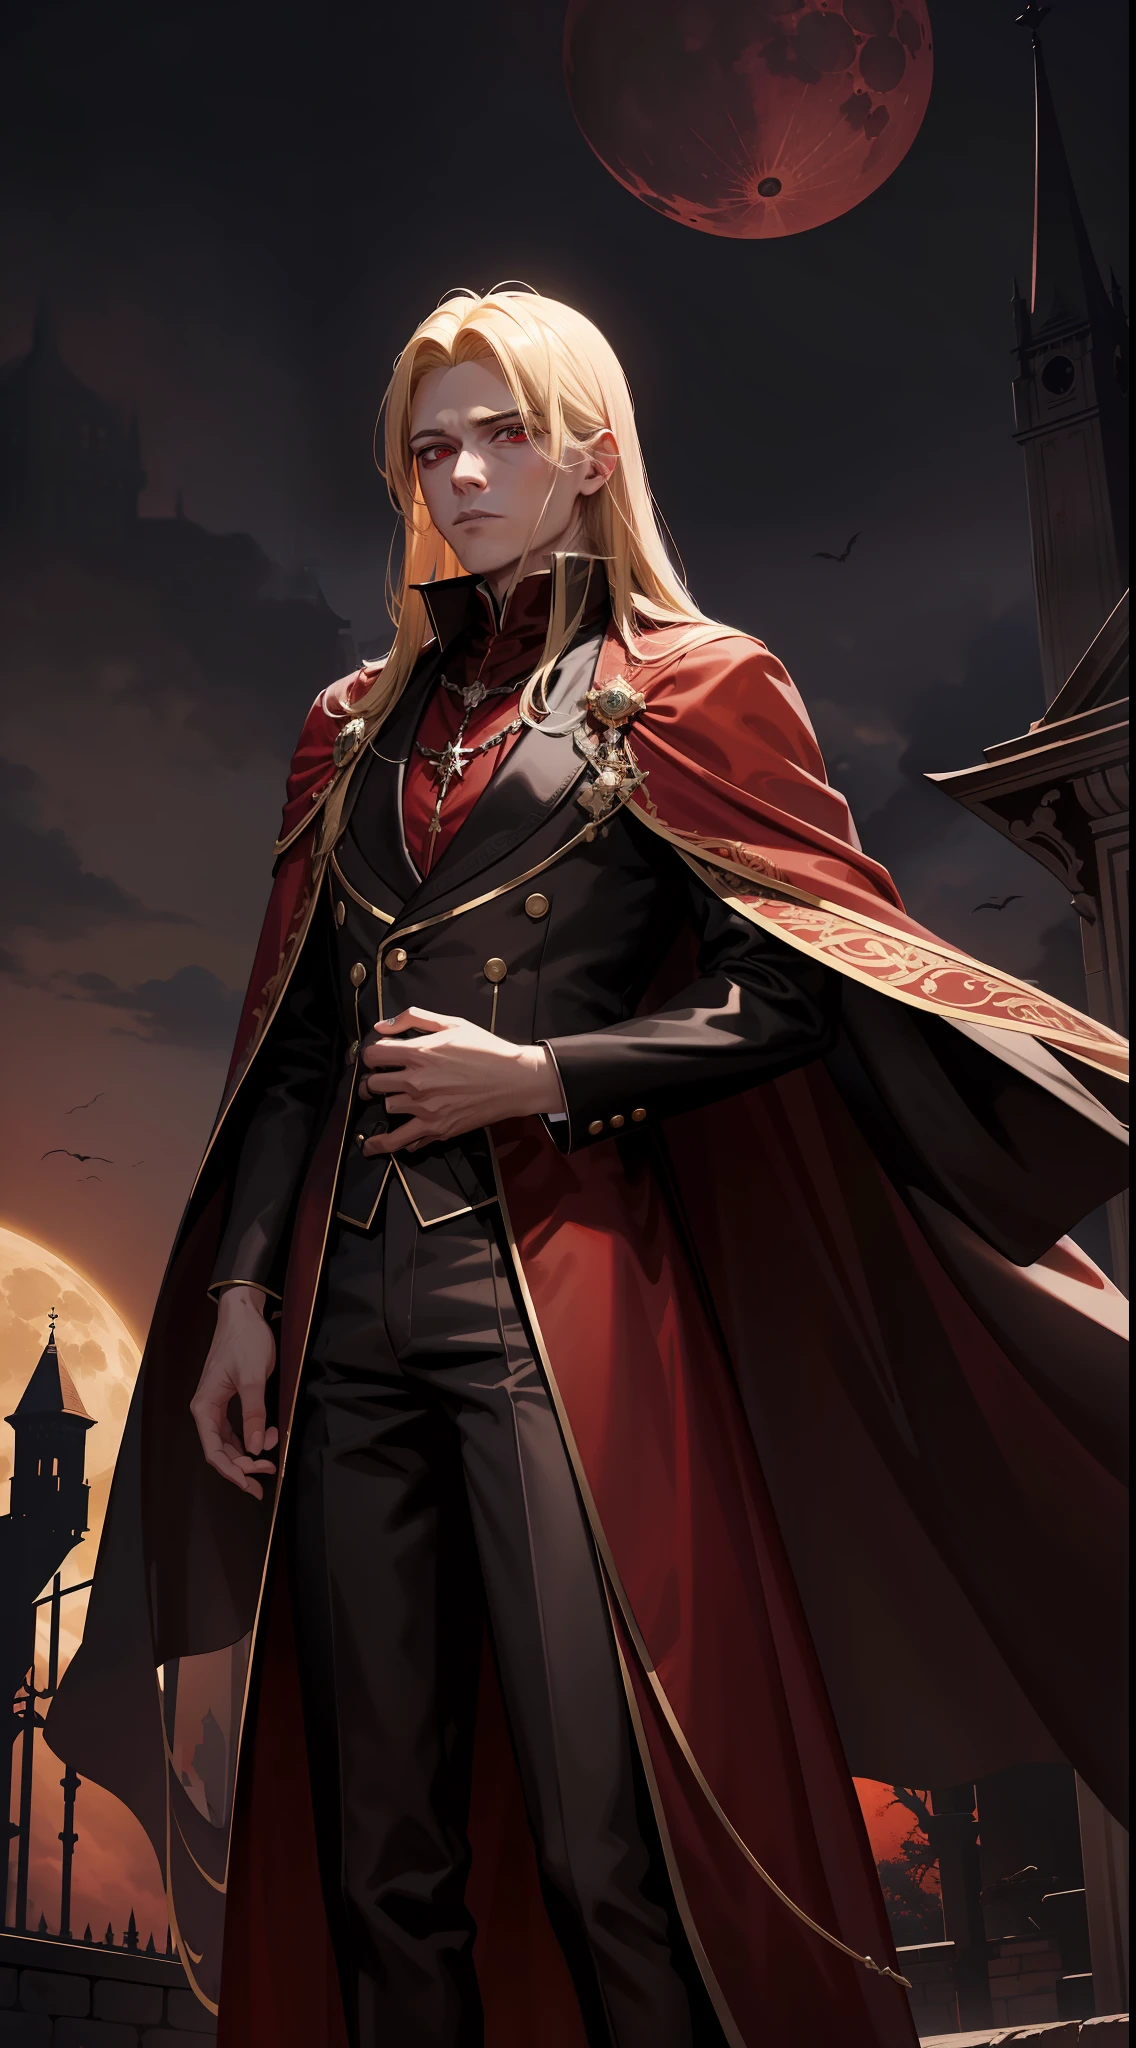 29세 남성, 금발 머리와 붉은 눈을 가진 뱀파이어 왕, 그는 갈색 가운을 입고 빨간색과 검은색 옷을 입는다. (세나리우스 왕성에서의 피묻은 달밤)